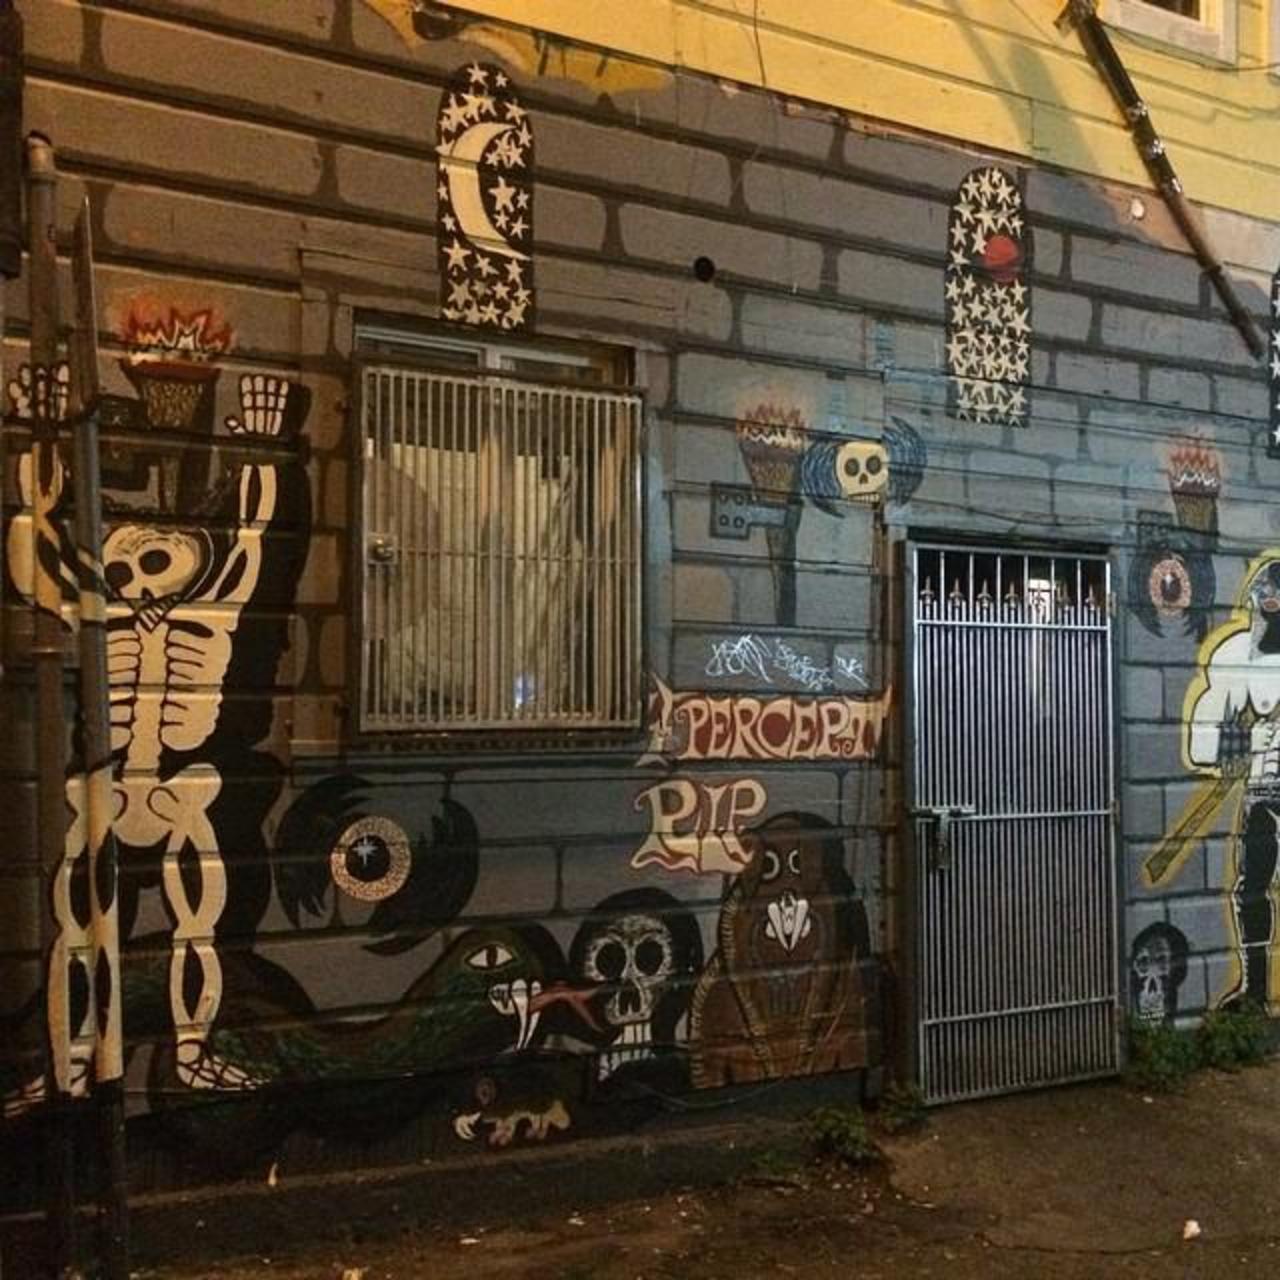 #Mural #Graffiti #WallArt #Art #MissionStreet #SanFrancisco http://t.co/FqoAwWjARB